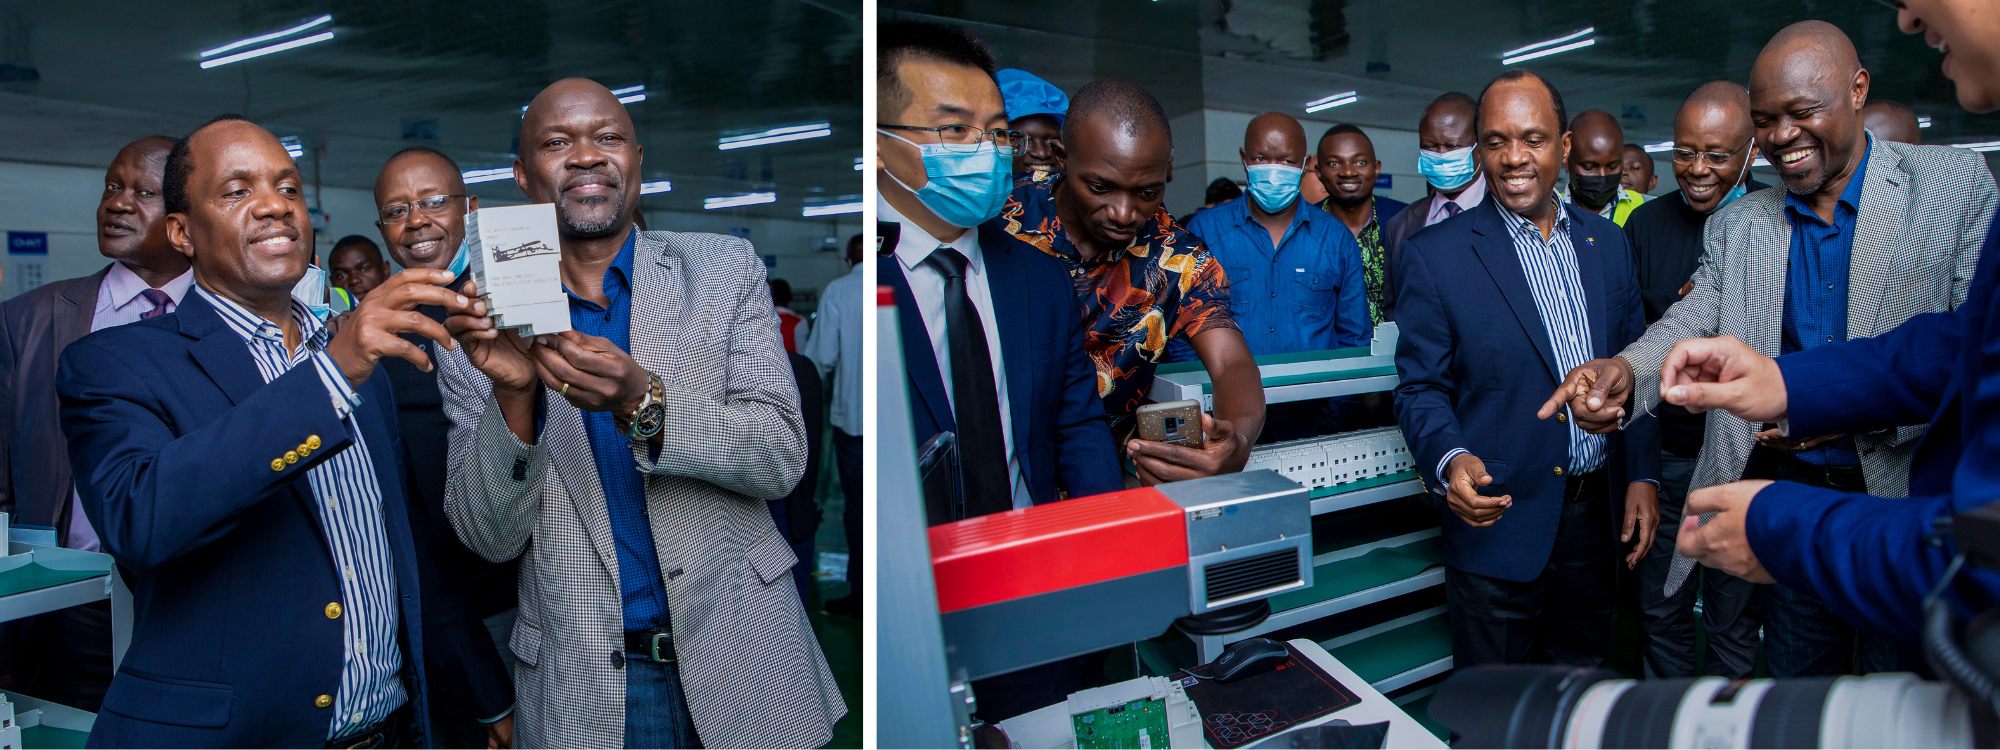 Inauguration de la première usine de compteurs de CHINT en Ouganda, pour soutenir le développement industriel local